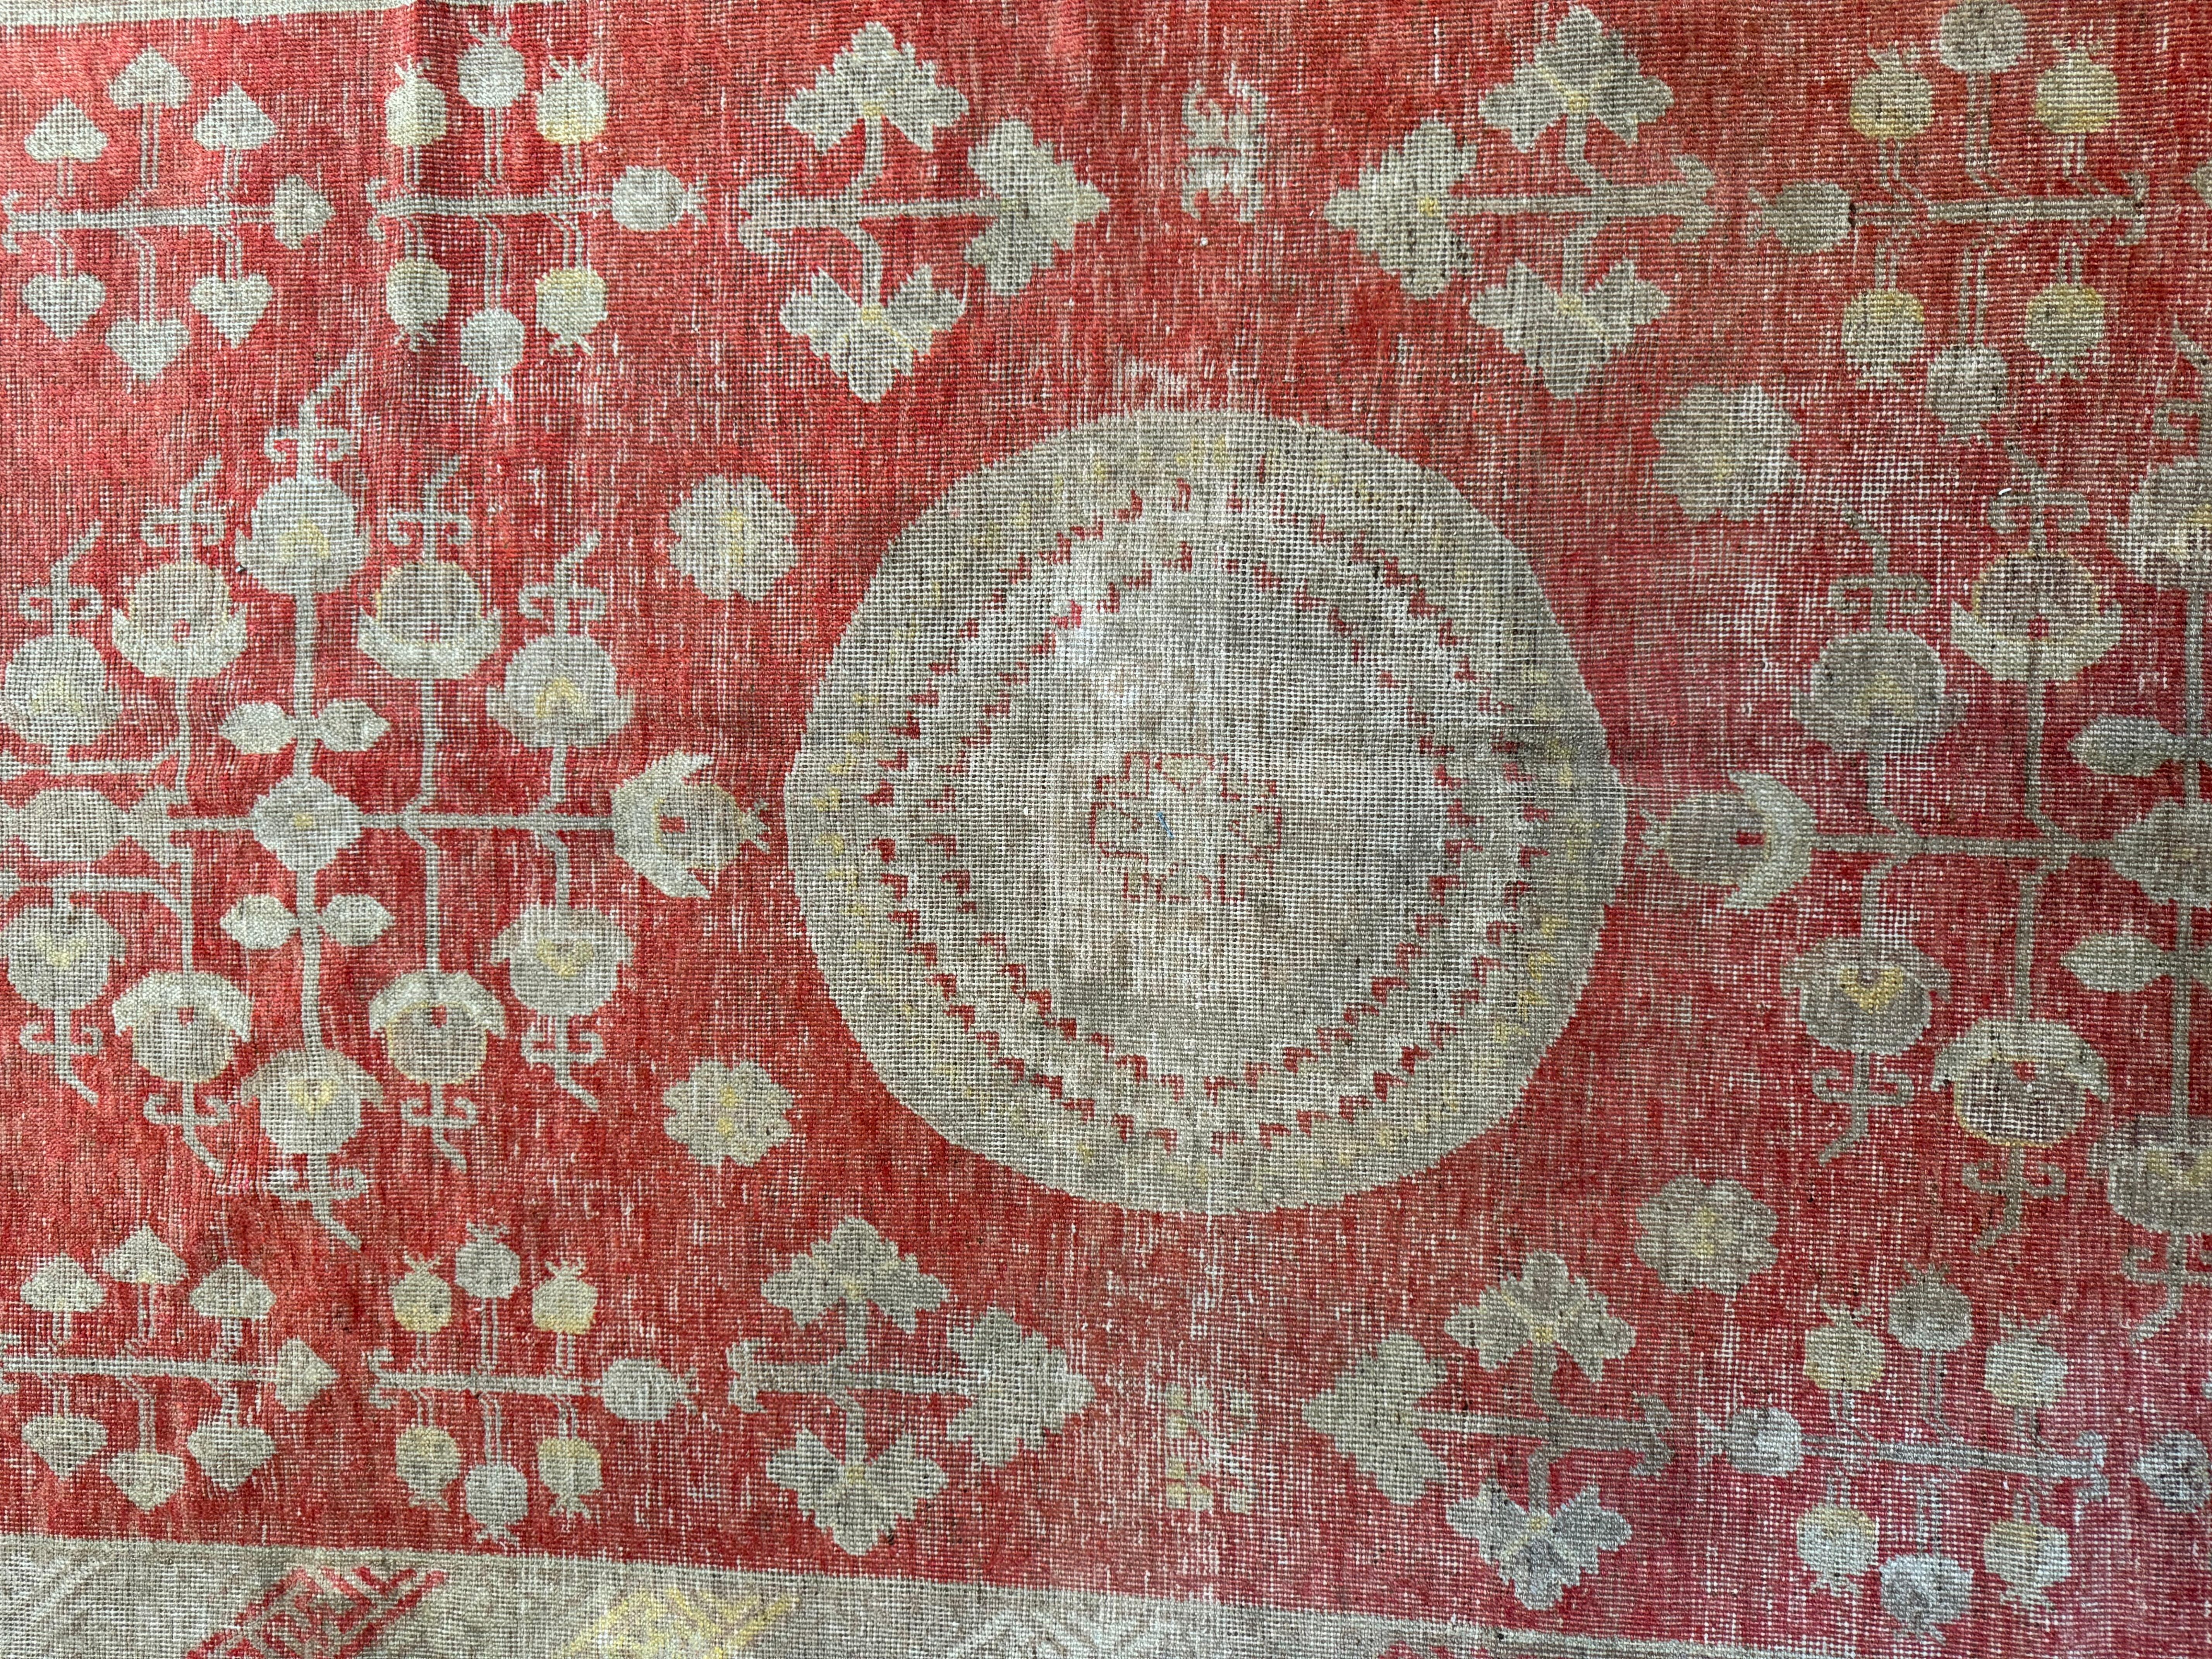 Mit diesem antiken Samarkand-Teppich aus dem 19. Jahrhundert, der sich über eine Fläche von 10,10' x 5,5' erstreckt, werden Sie in Eleganz schwelgen. Die filigranen Muster und tiefen Farbtöne verleihen Ihrem amerikanischen Zuhause zeitlose